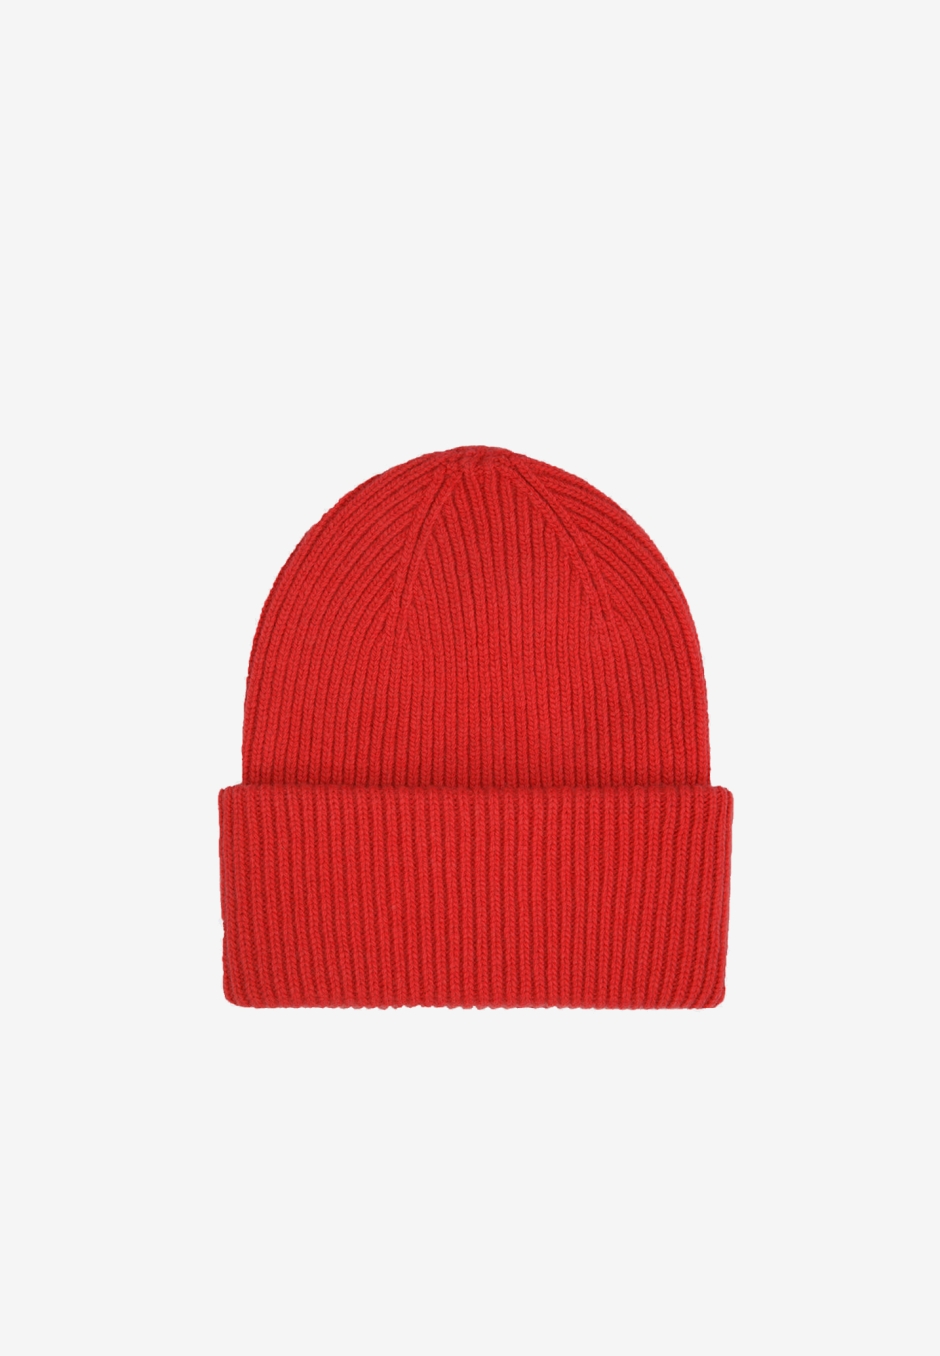 Colorful Standard Merino Wool Hat Scarlet Red